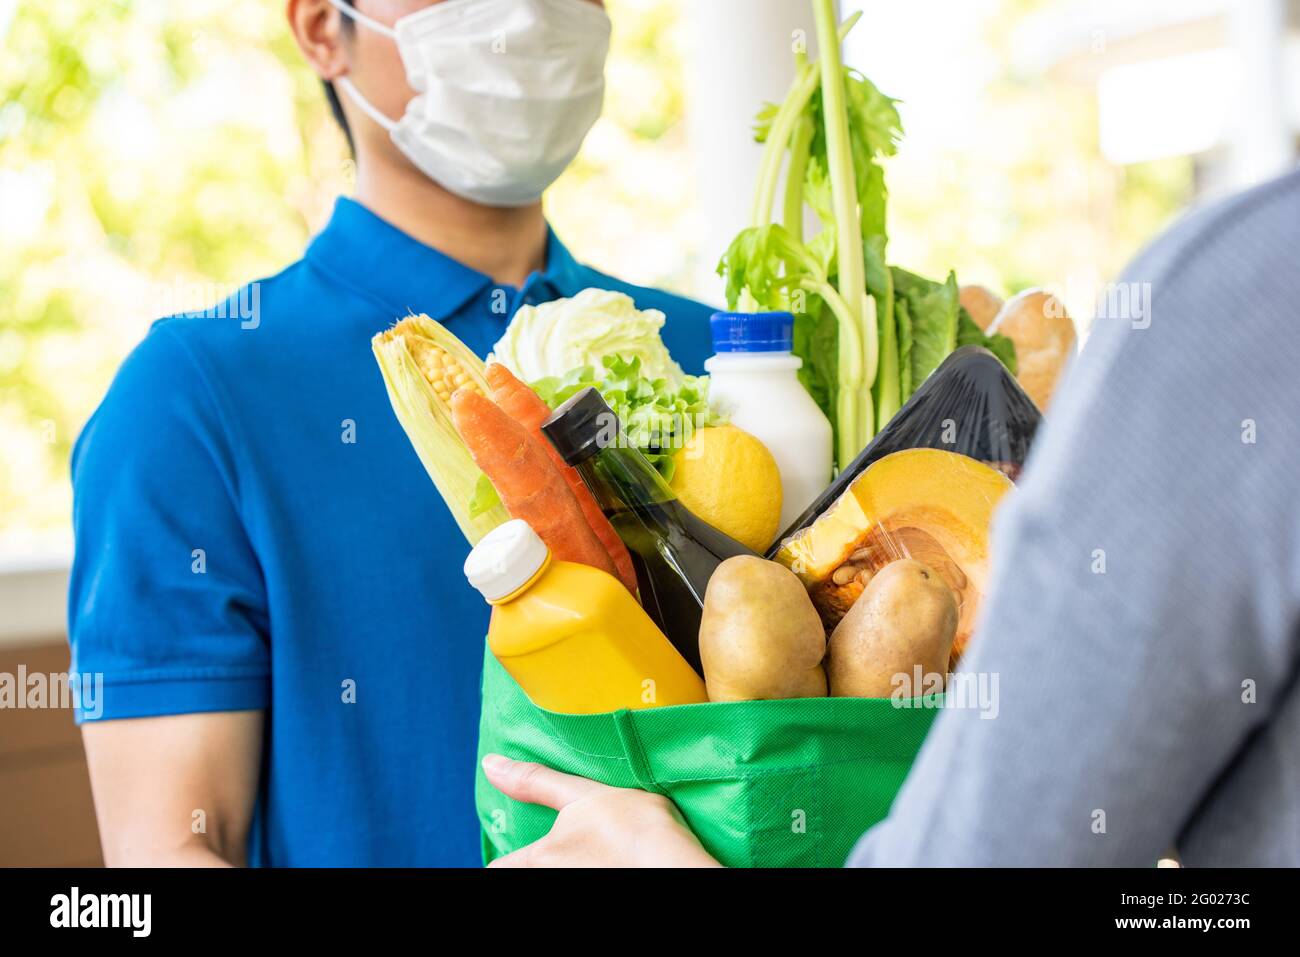 Homme de livraison asiatique en uniforme bleu portant un masque facial tout en livrant des produits alimentaires au client à la maison, livraison de nourriture en temps de pandémie concept Banque D'Images